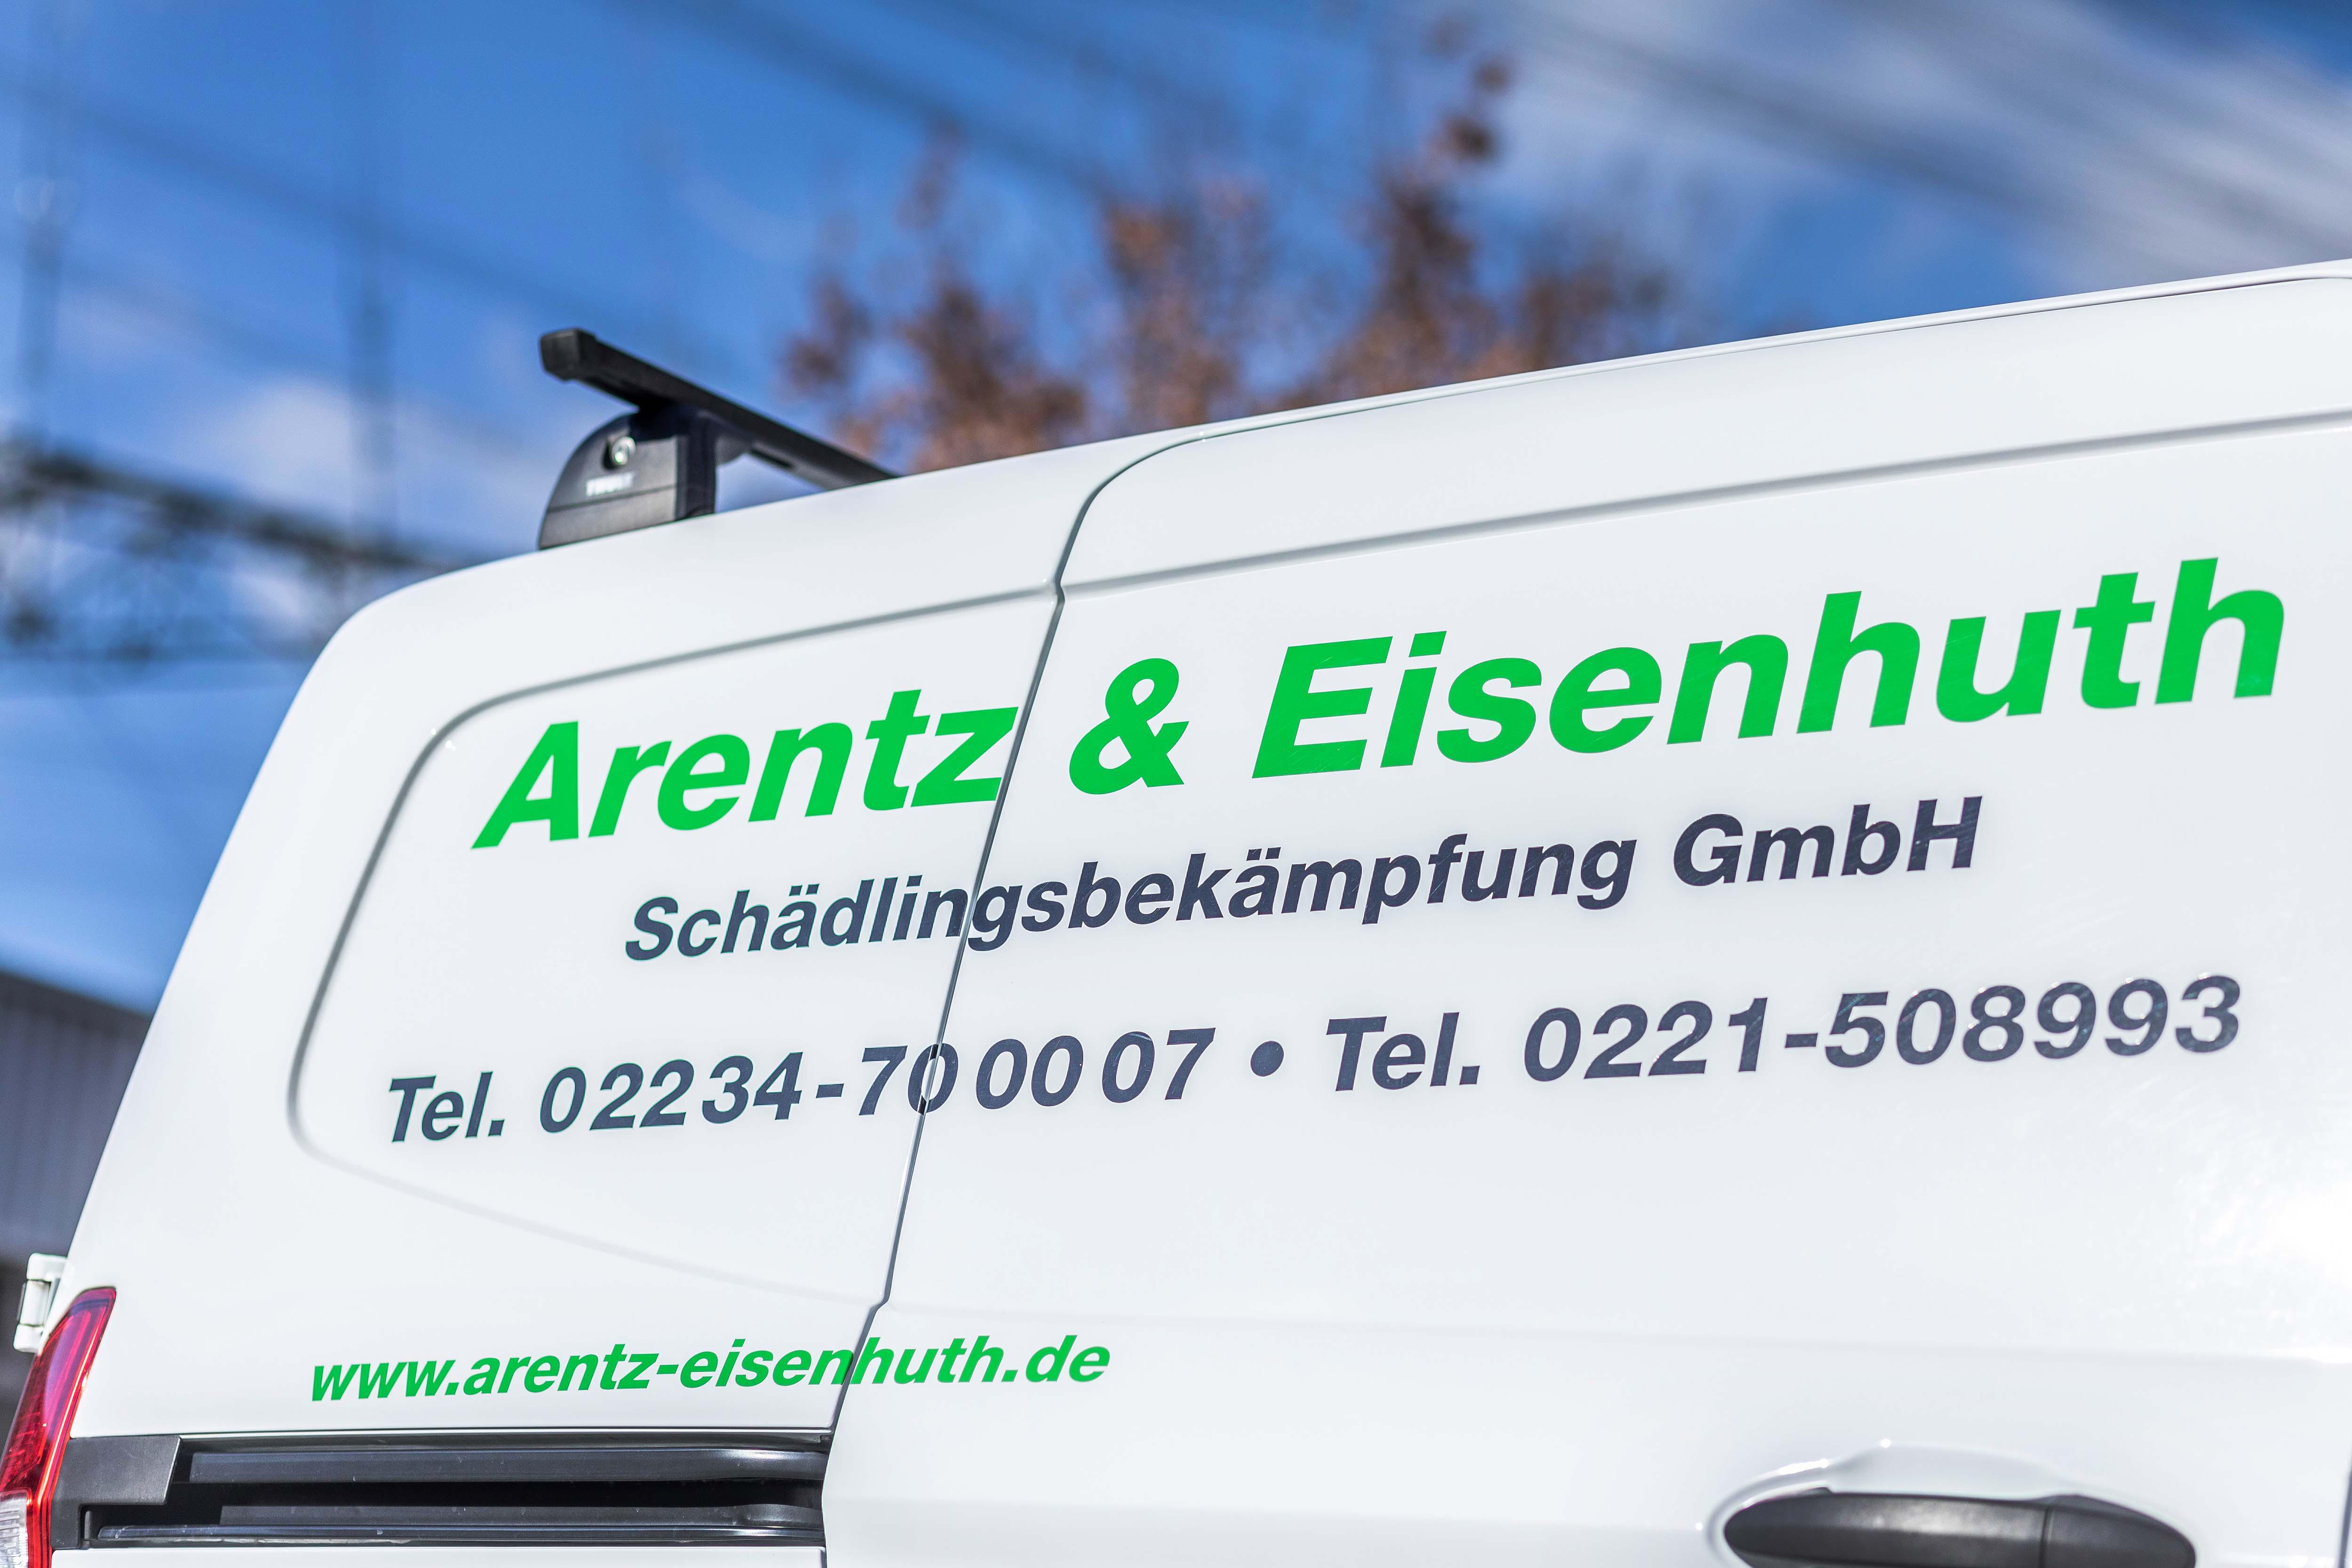 Arentz & Eisenhuth Schädlingsbekämpfung GmbH Köln, Lenaustraße 6 in Köln